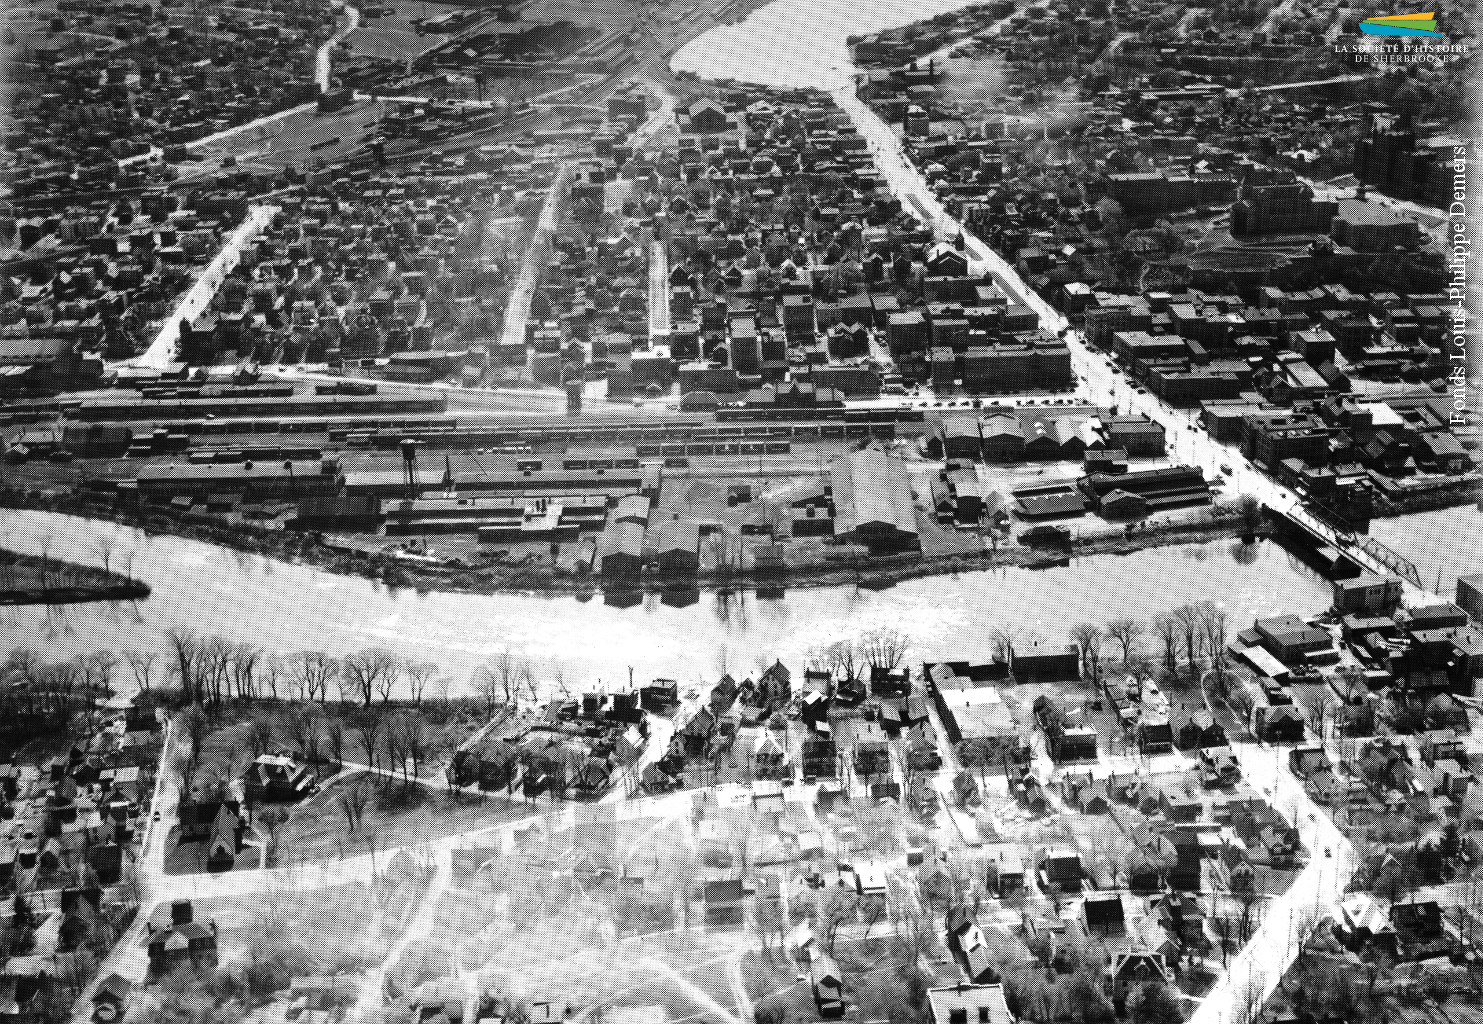 Une vue aérienne du quartier Centre et de la rue King depuis l’est de Sherbrooke, vers 1950. Au centre se trouve le complexe industriel construit par la <em>Jenckes Machine Co.</em> en 1894, et tout autour des habitations.